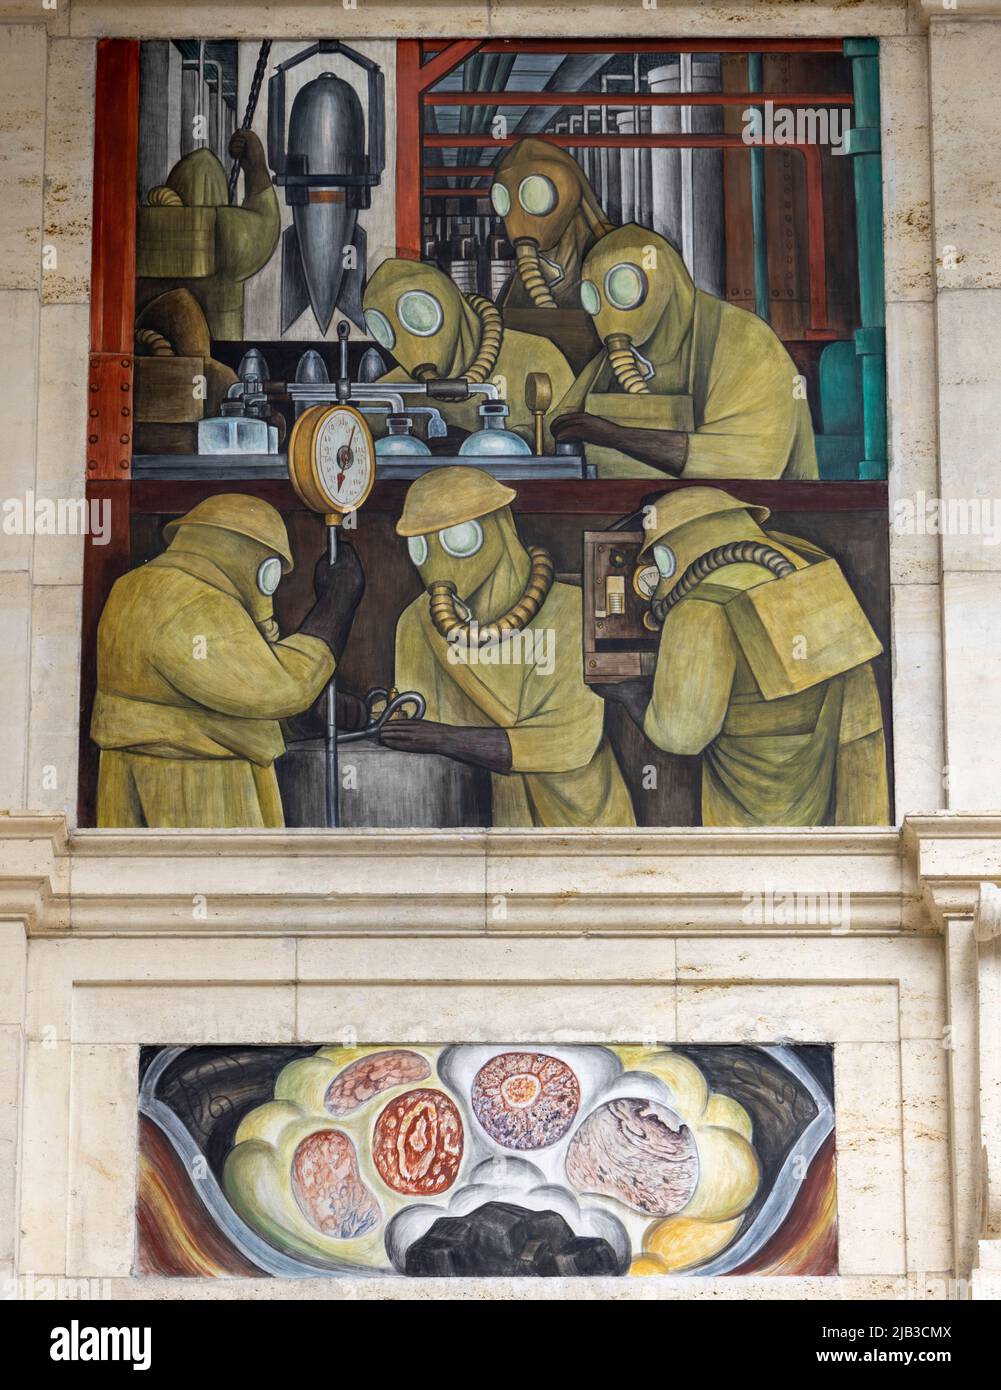 Detail, Nordwand, Bombenfabrik, die Detroit Industry Murals (1932–1933), Fresken von Diego Rivera, die die Industrie in Detroit, USA, darstellen Stockfoto